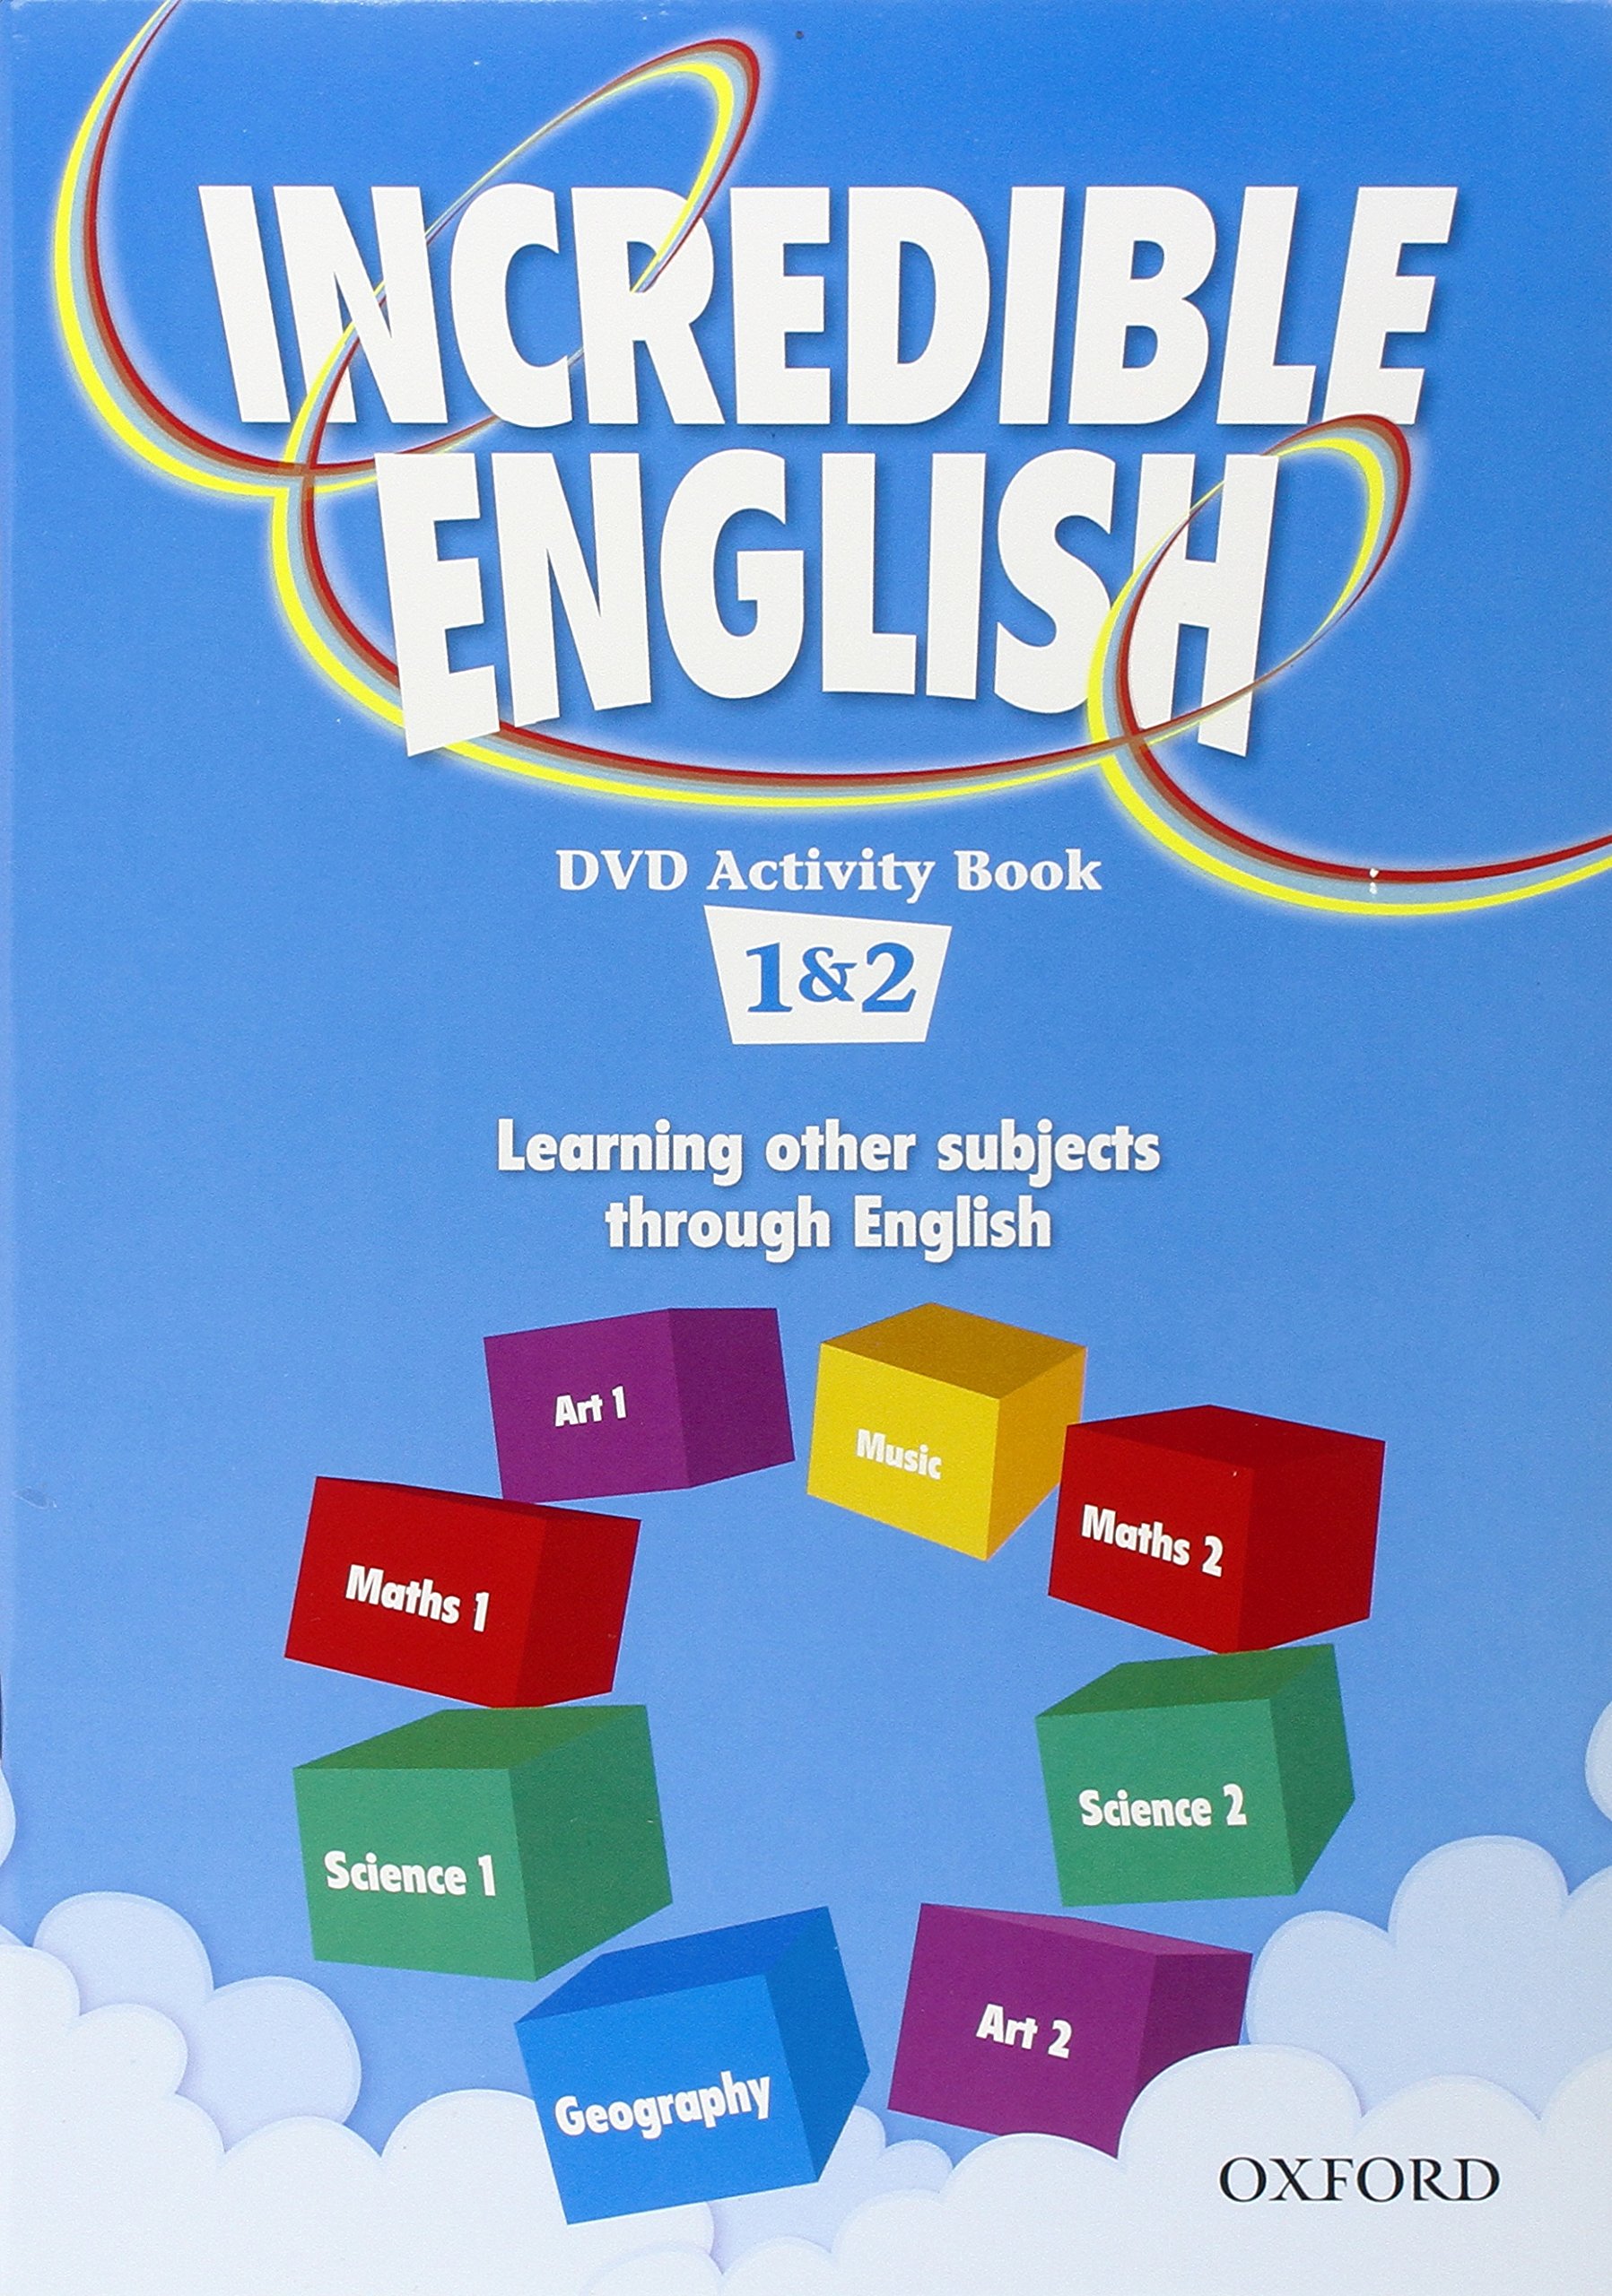 INCREDIBLE ENGLISH 1&2 DVD